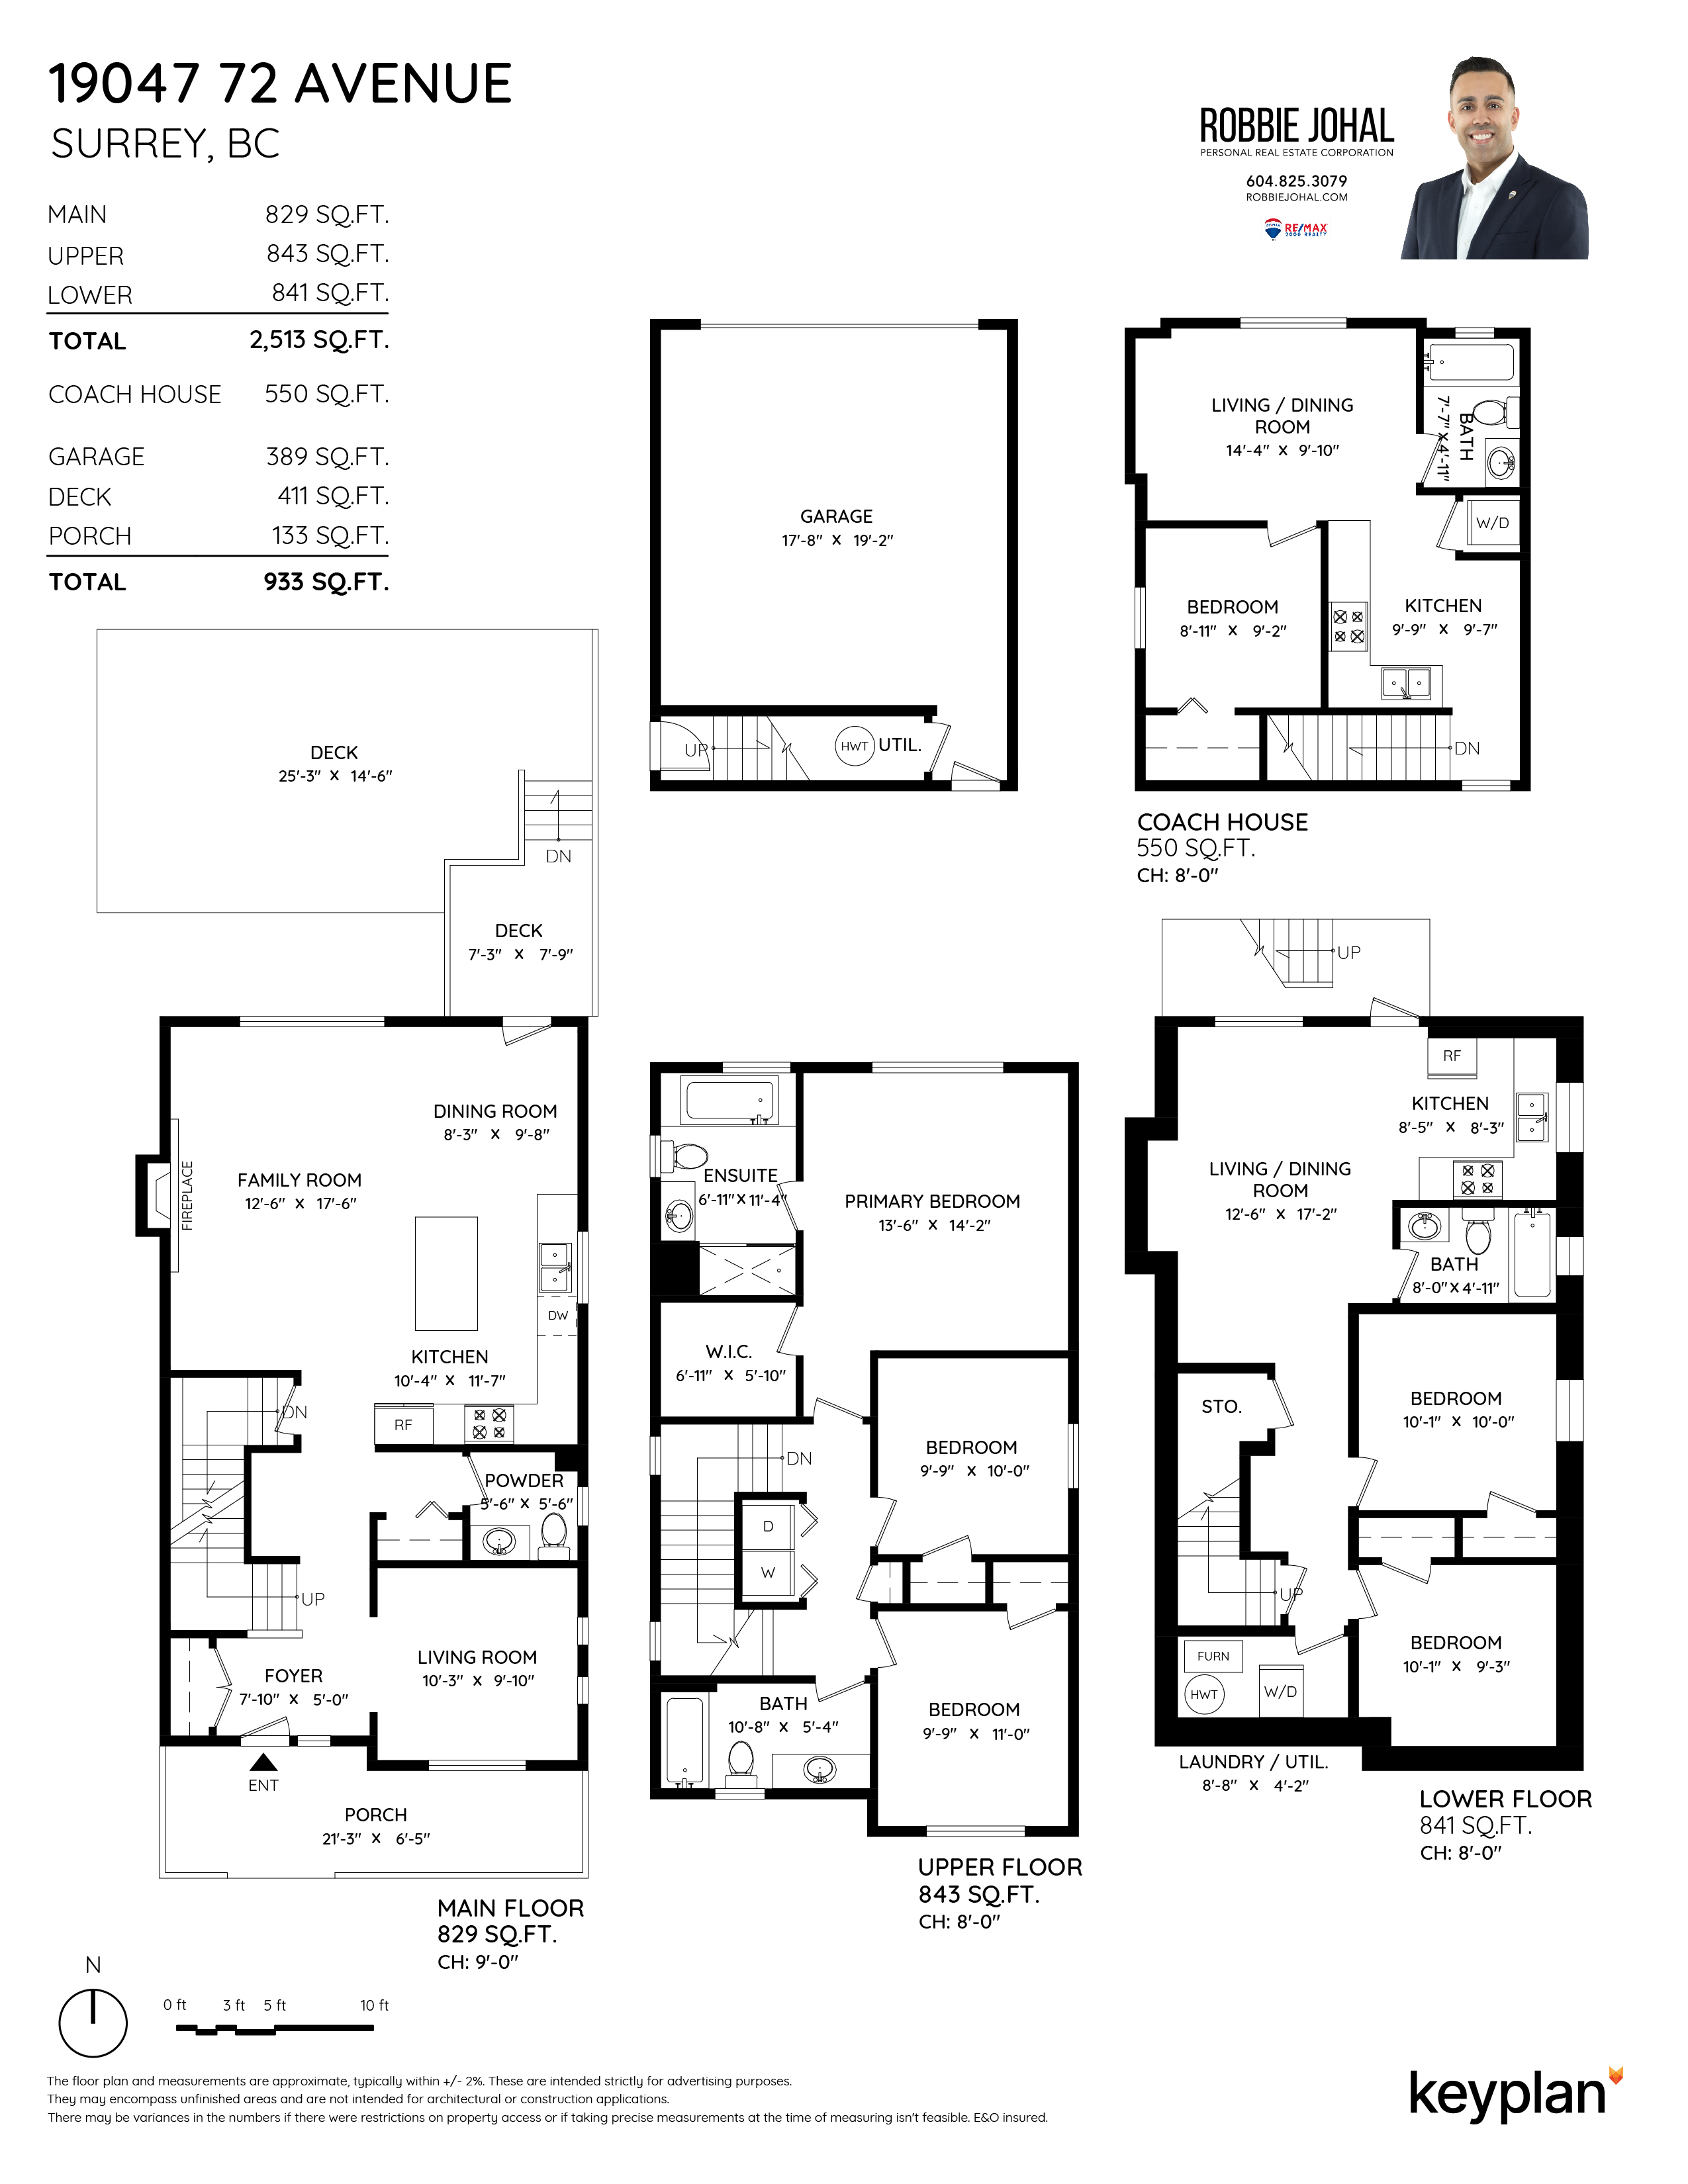 Robbie Johal - 19047 72 Avenue, Surrey, BC, Canada | Floor Plan 1